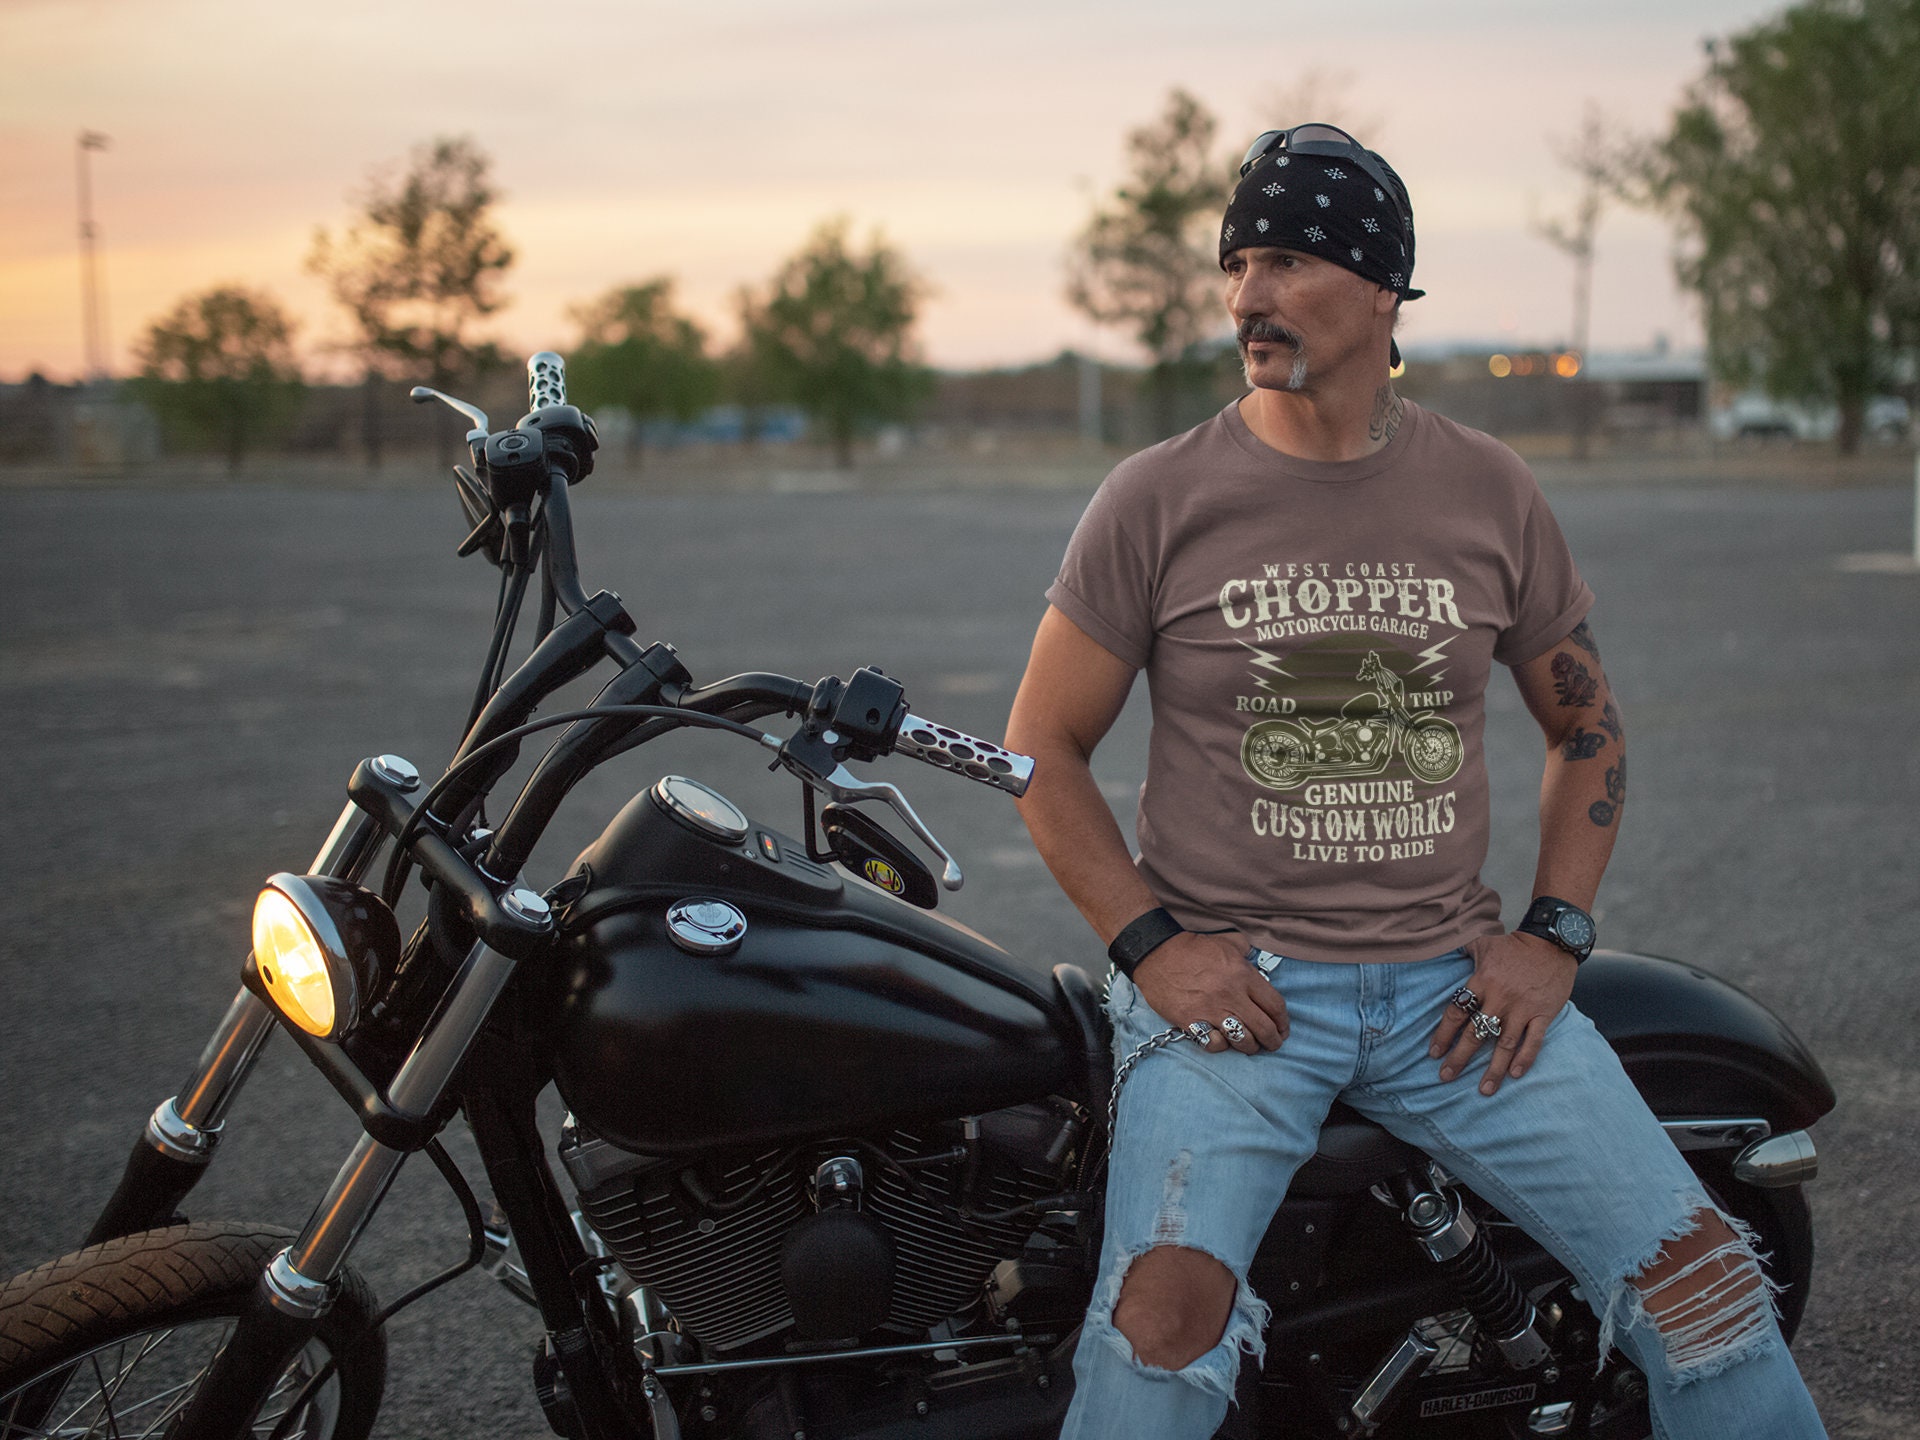 Tee Shirt de Moto pour Homme WEST COAST CHOPPER